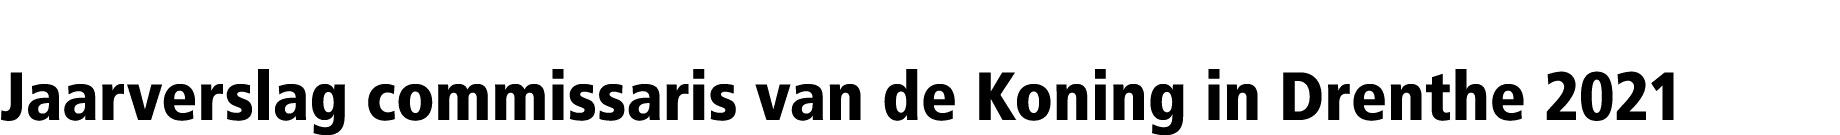 Jaarverslag commissaris van de Koning in Drenthe 2021